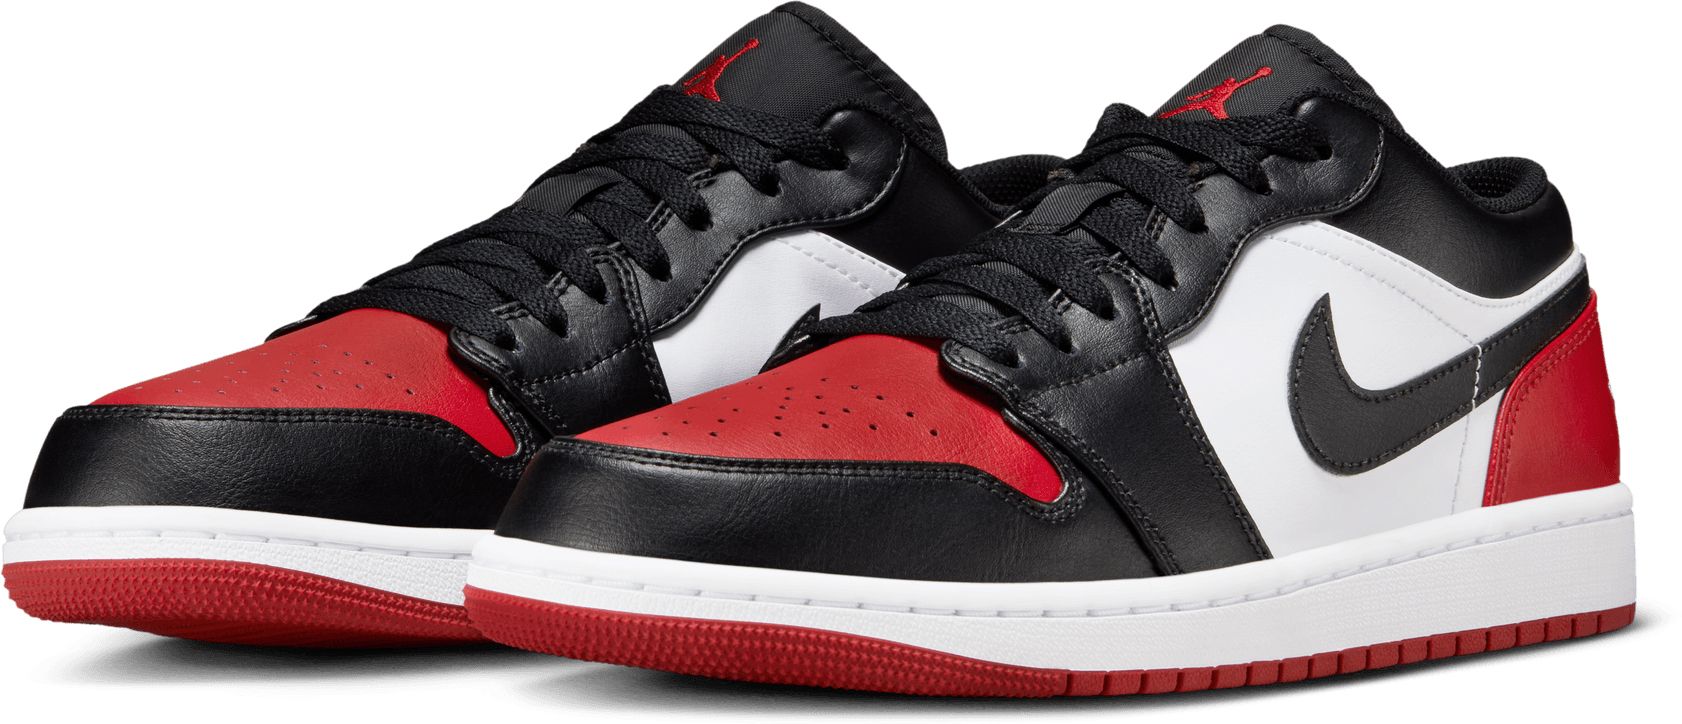 Air Jordan 1 Low 'Bred Toe' Shoes | Dick's Sporting Goods